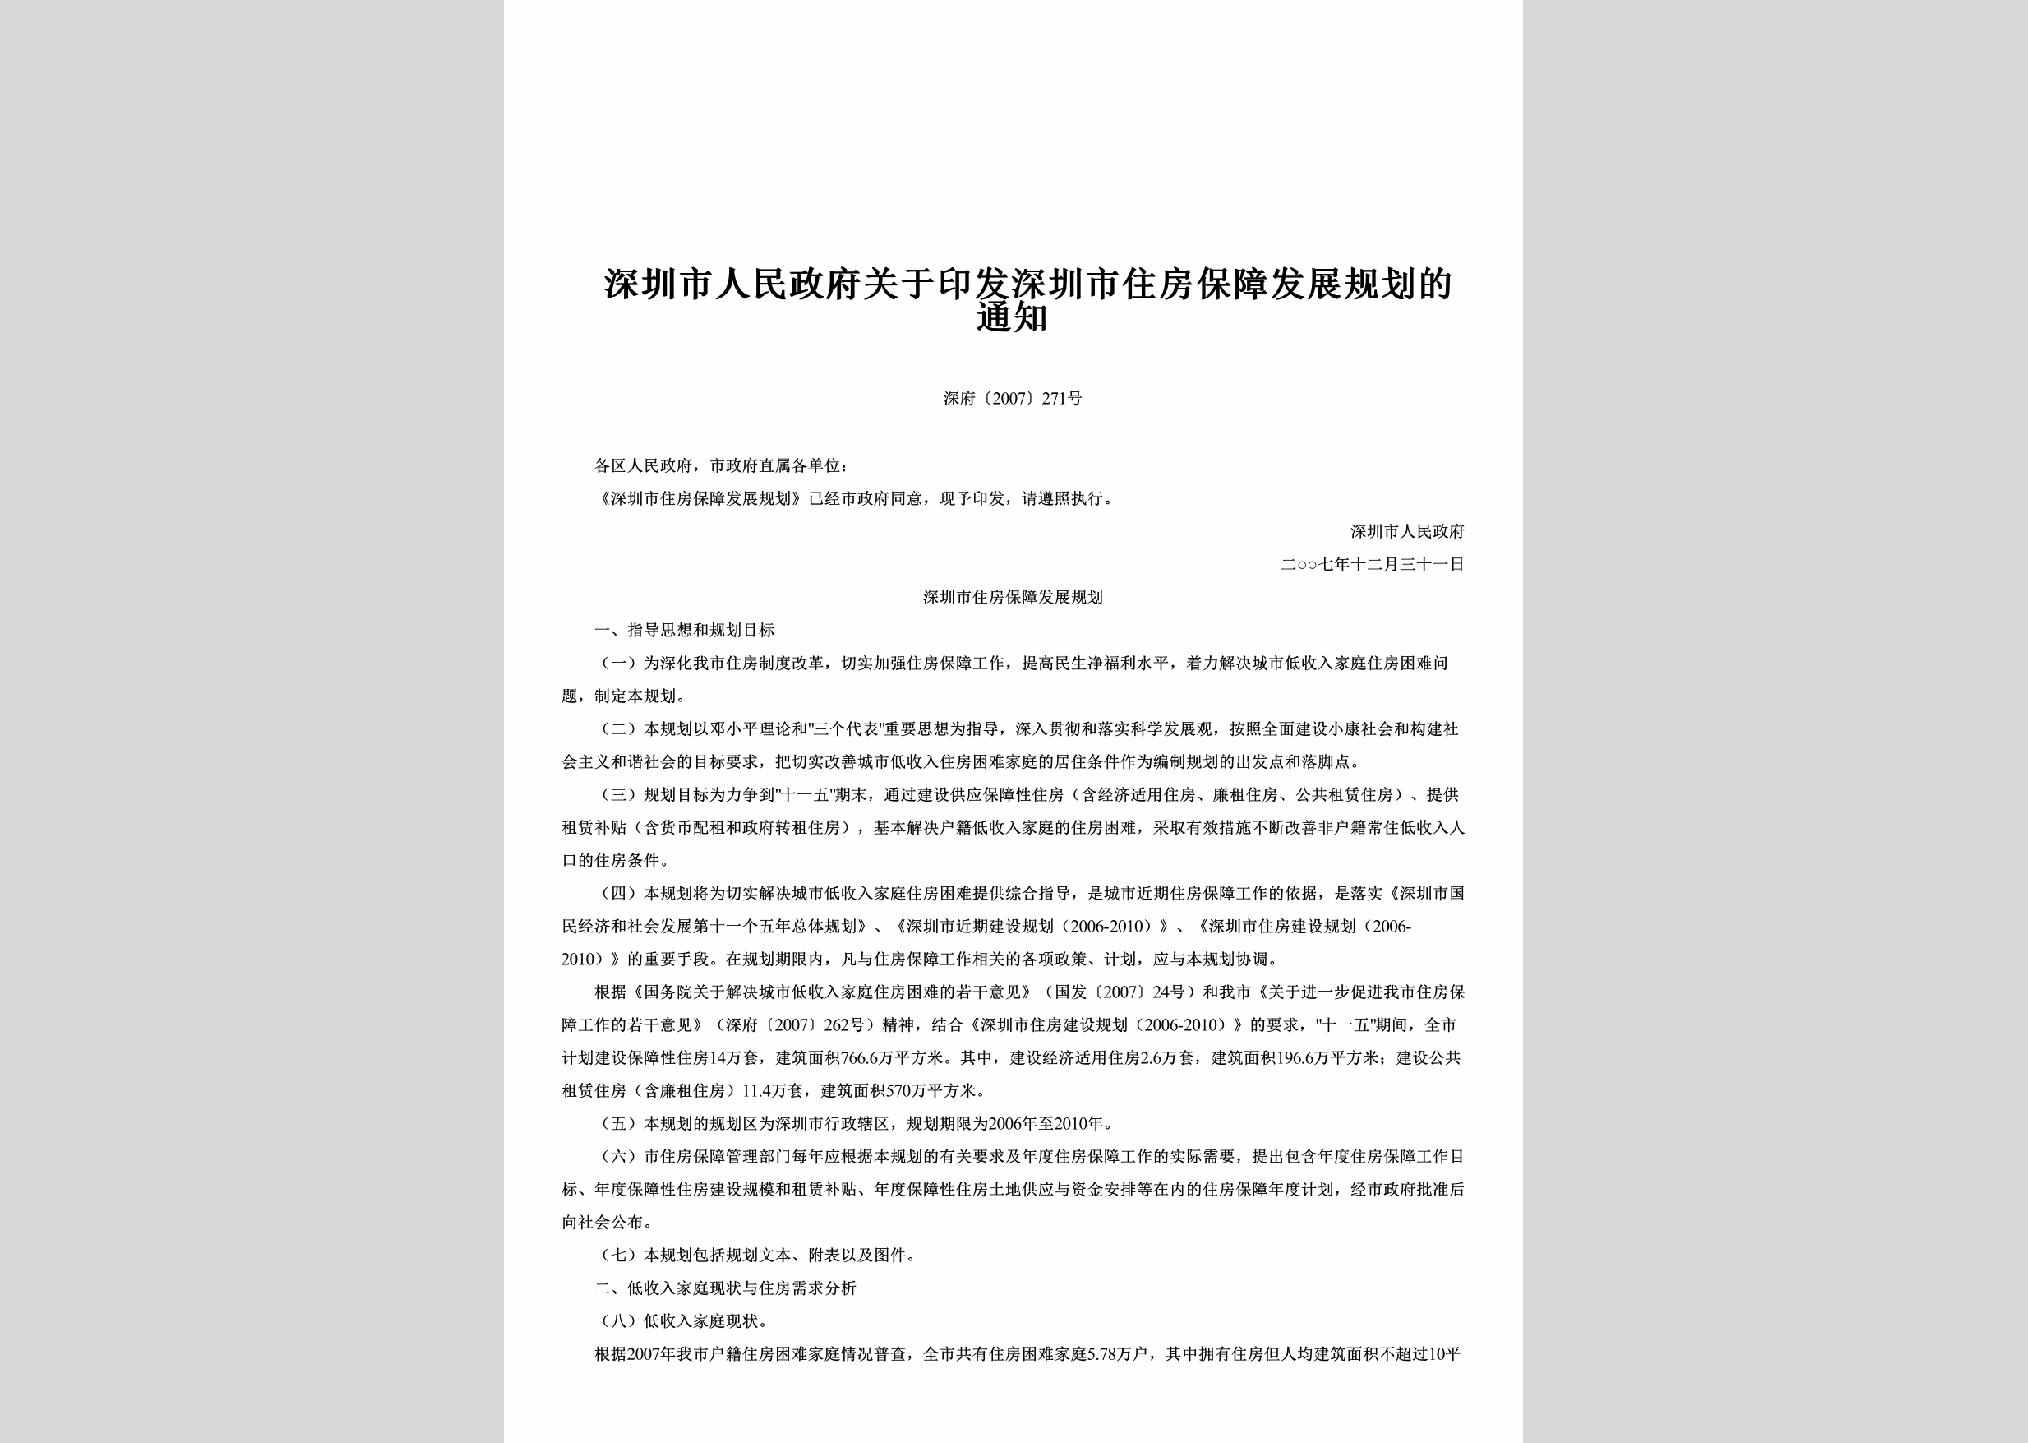 深府[2007]271号：关于印发深圳市住房保障发展规划的通知